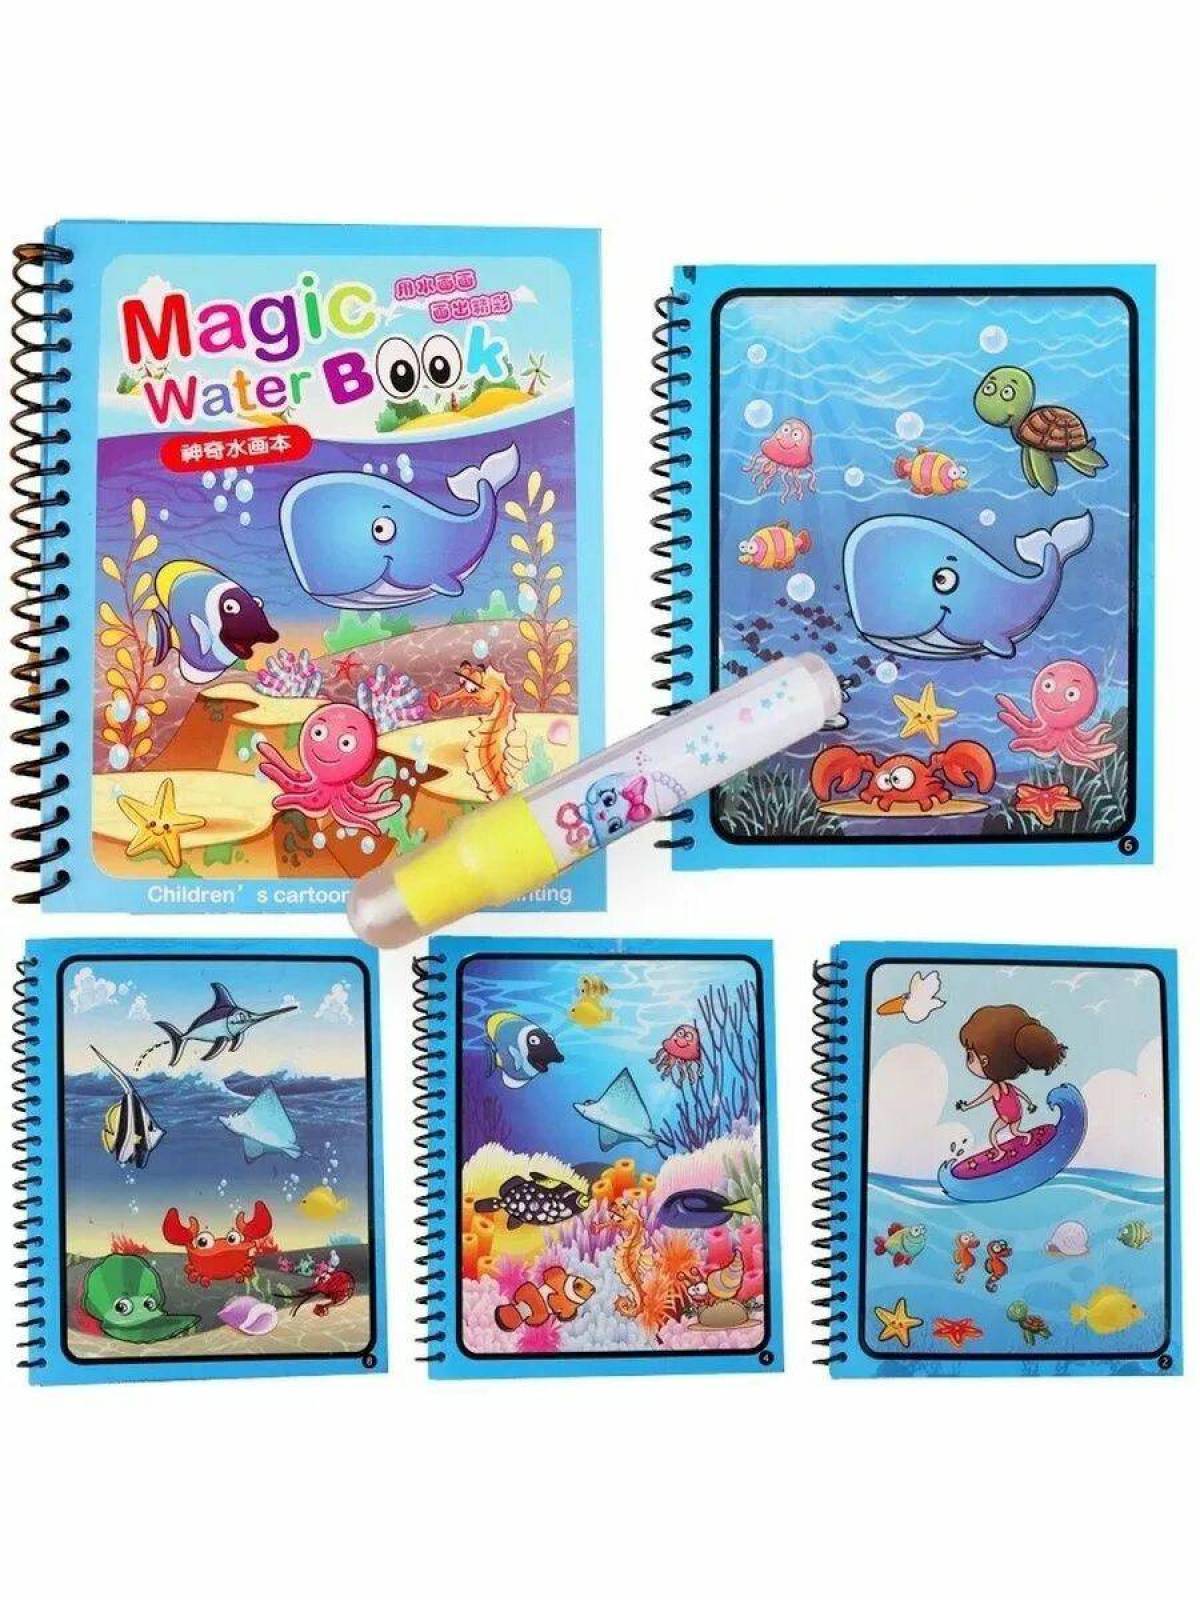 Magic water book #3